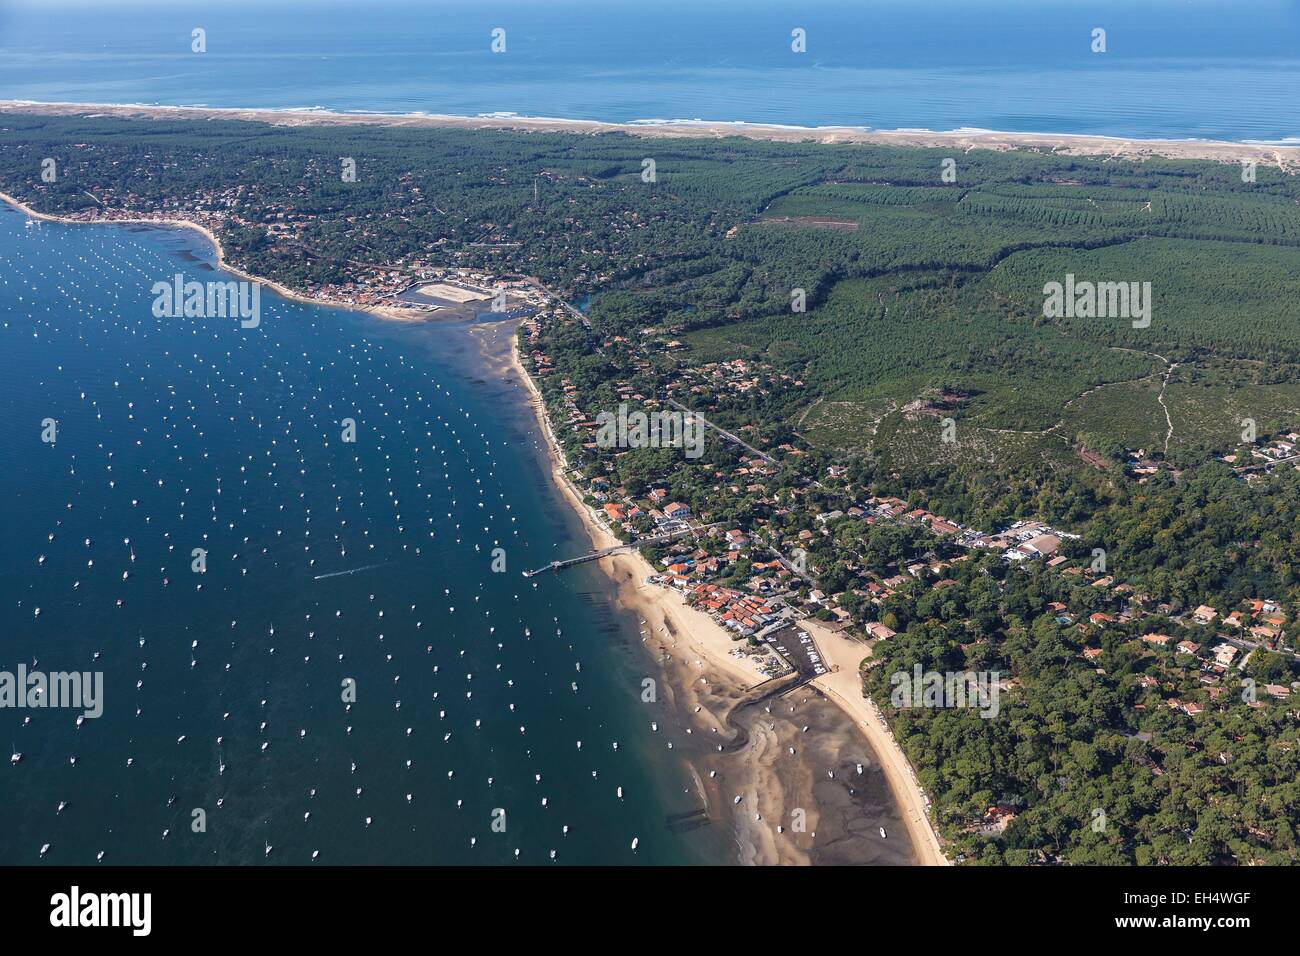 Francia, Gironde, Lege Cap Ferret, le Piquey, el balneario de la Bassin d'Arcachon y el bosque de pinos (vista aérea) Foto de stock